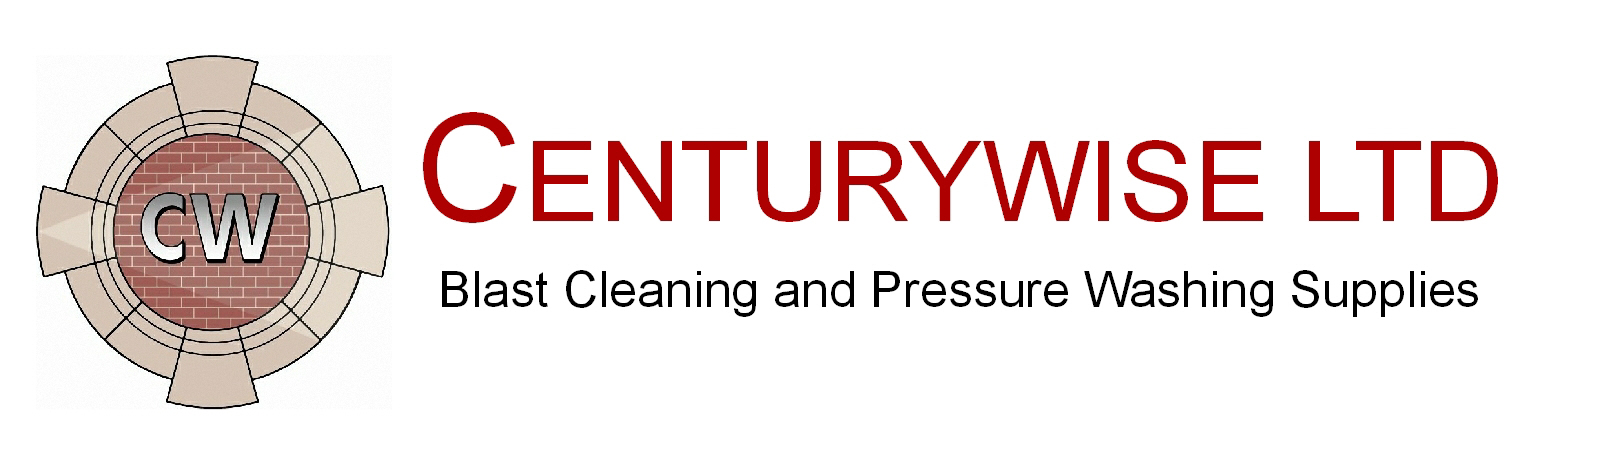 Centurywise Ltd.